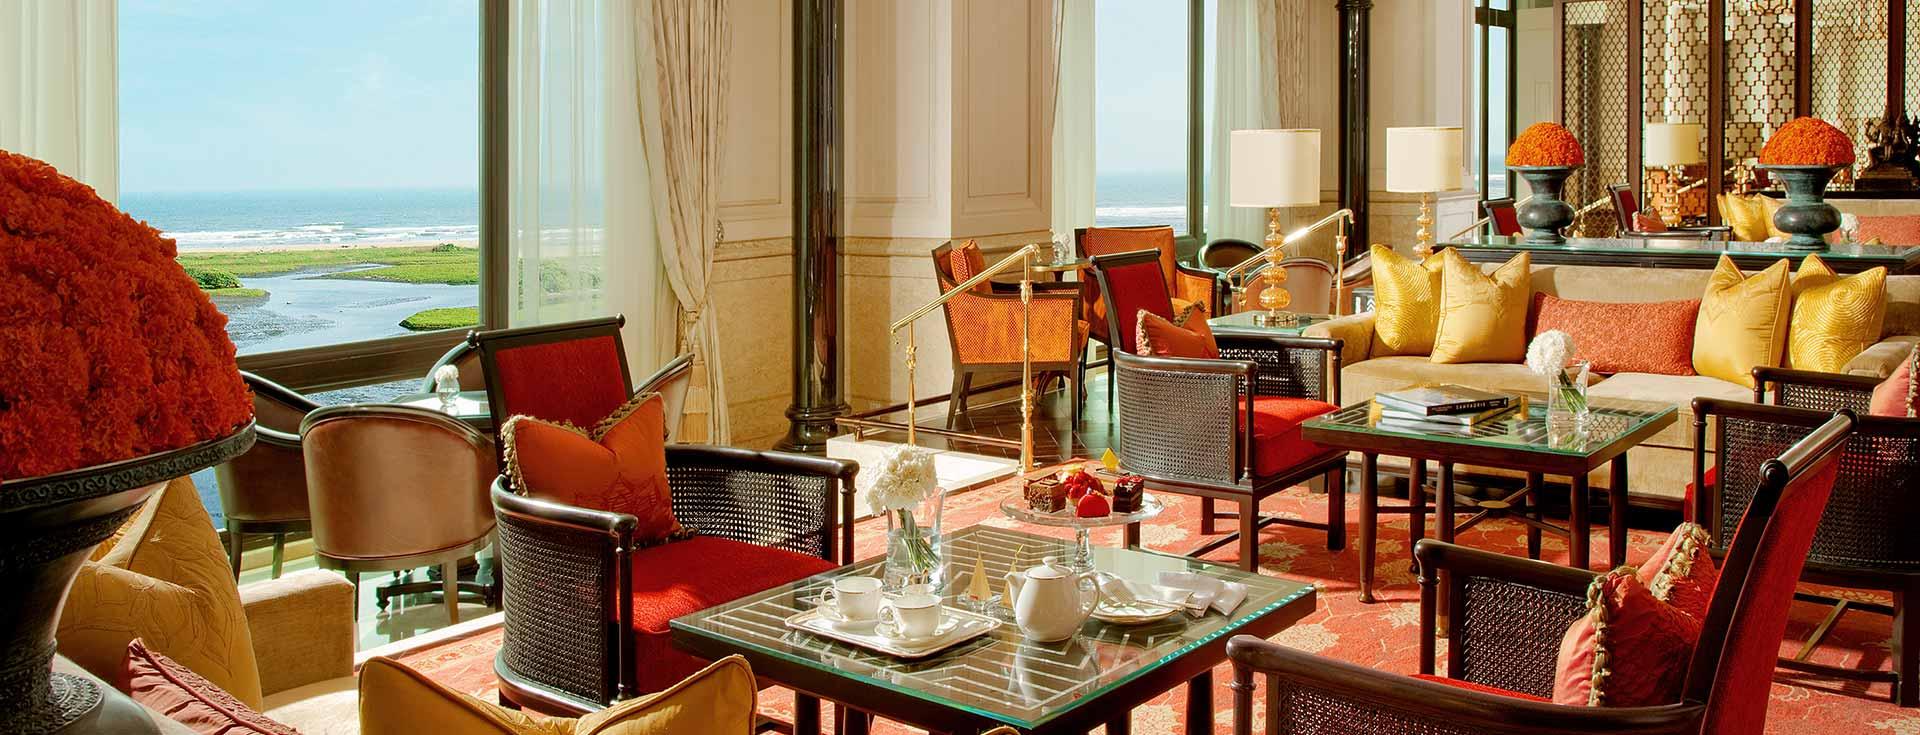 The Lobby Lounge - Leela Palace Chennai Hotel